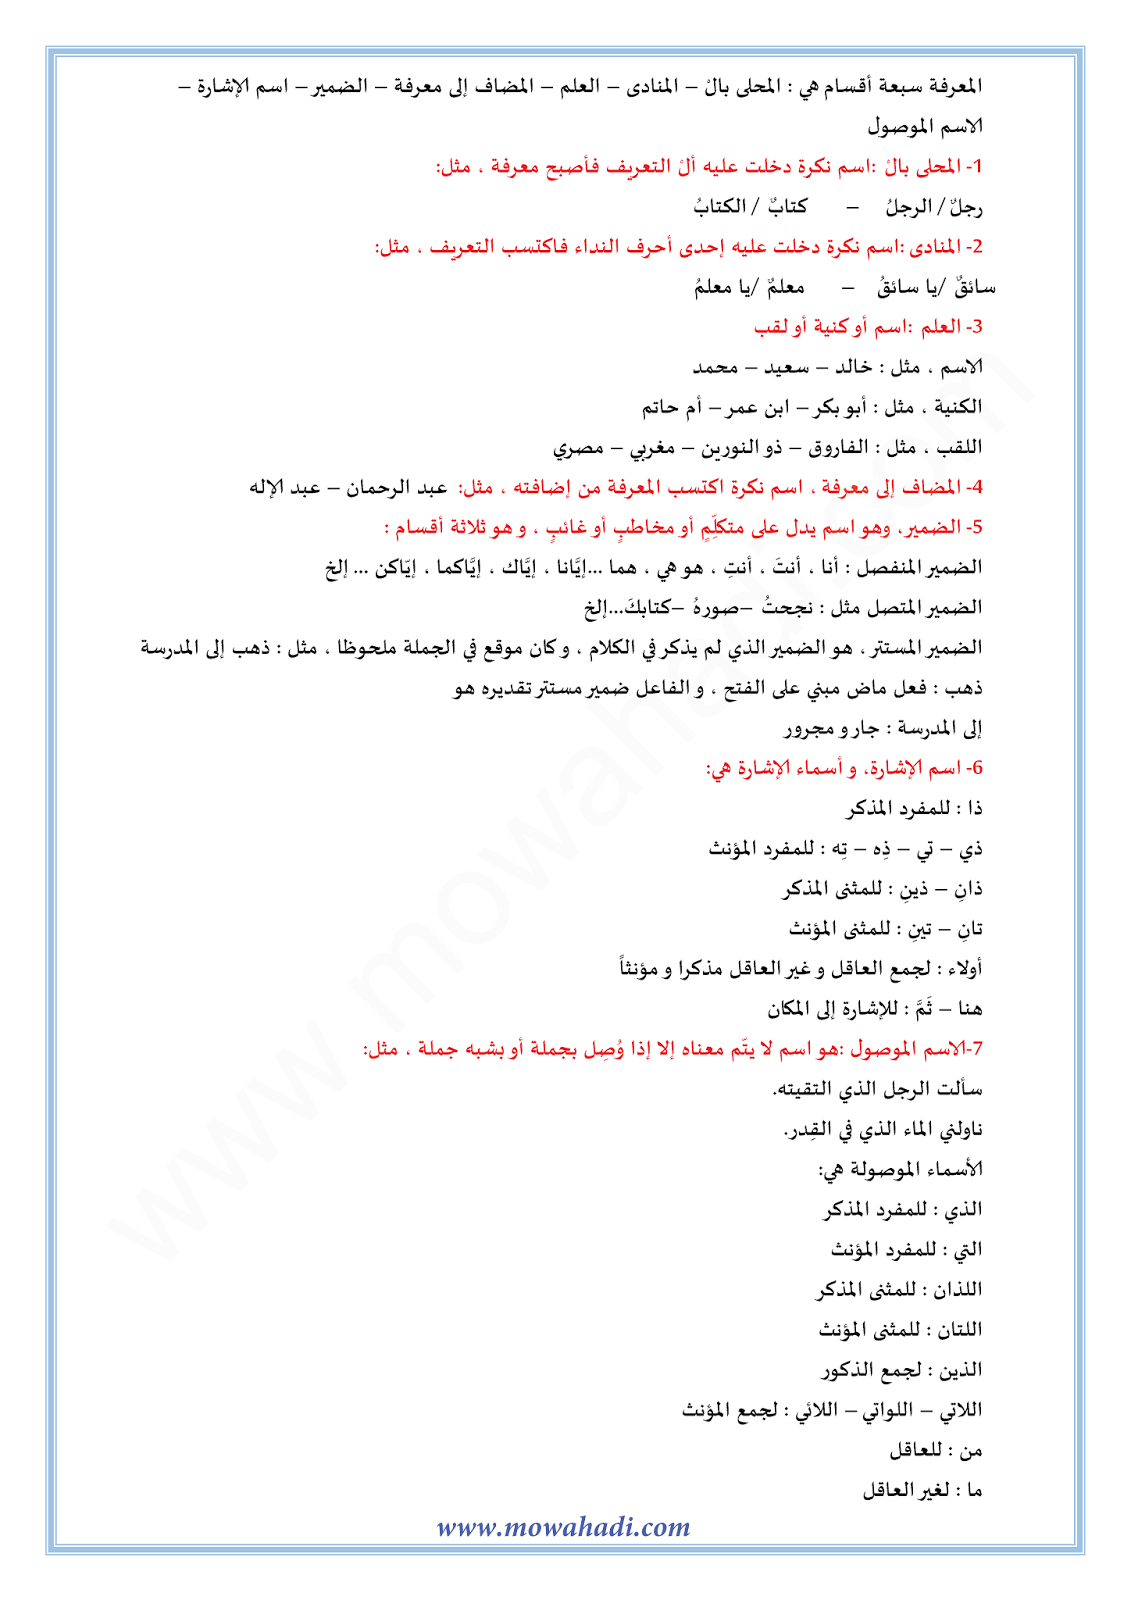 الدرس اللغوي النكرة و المعرفة للسنة الأولى اعدادي في مادة اللغة العربية 12-cours-dars-loghawi1_002